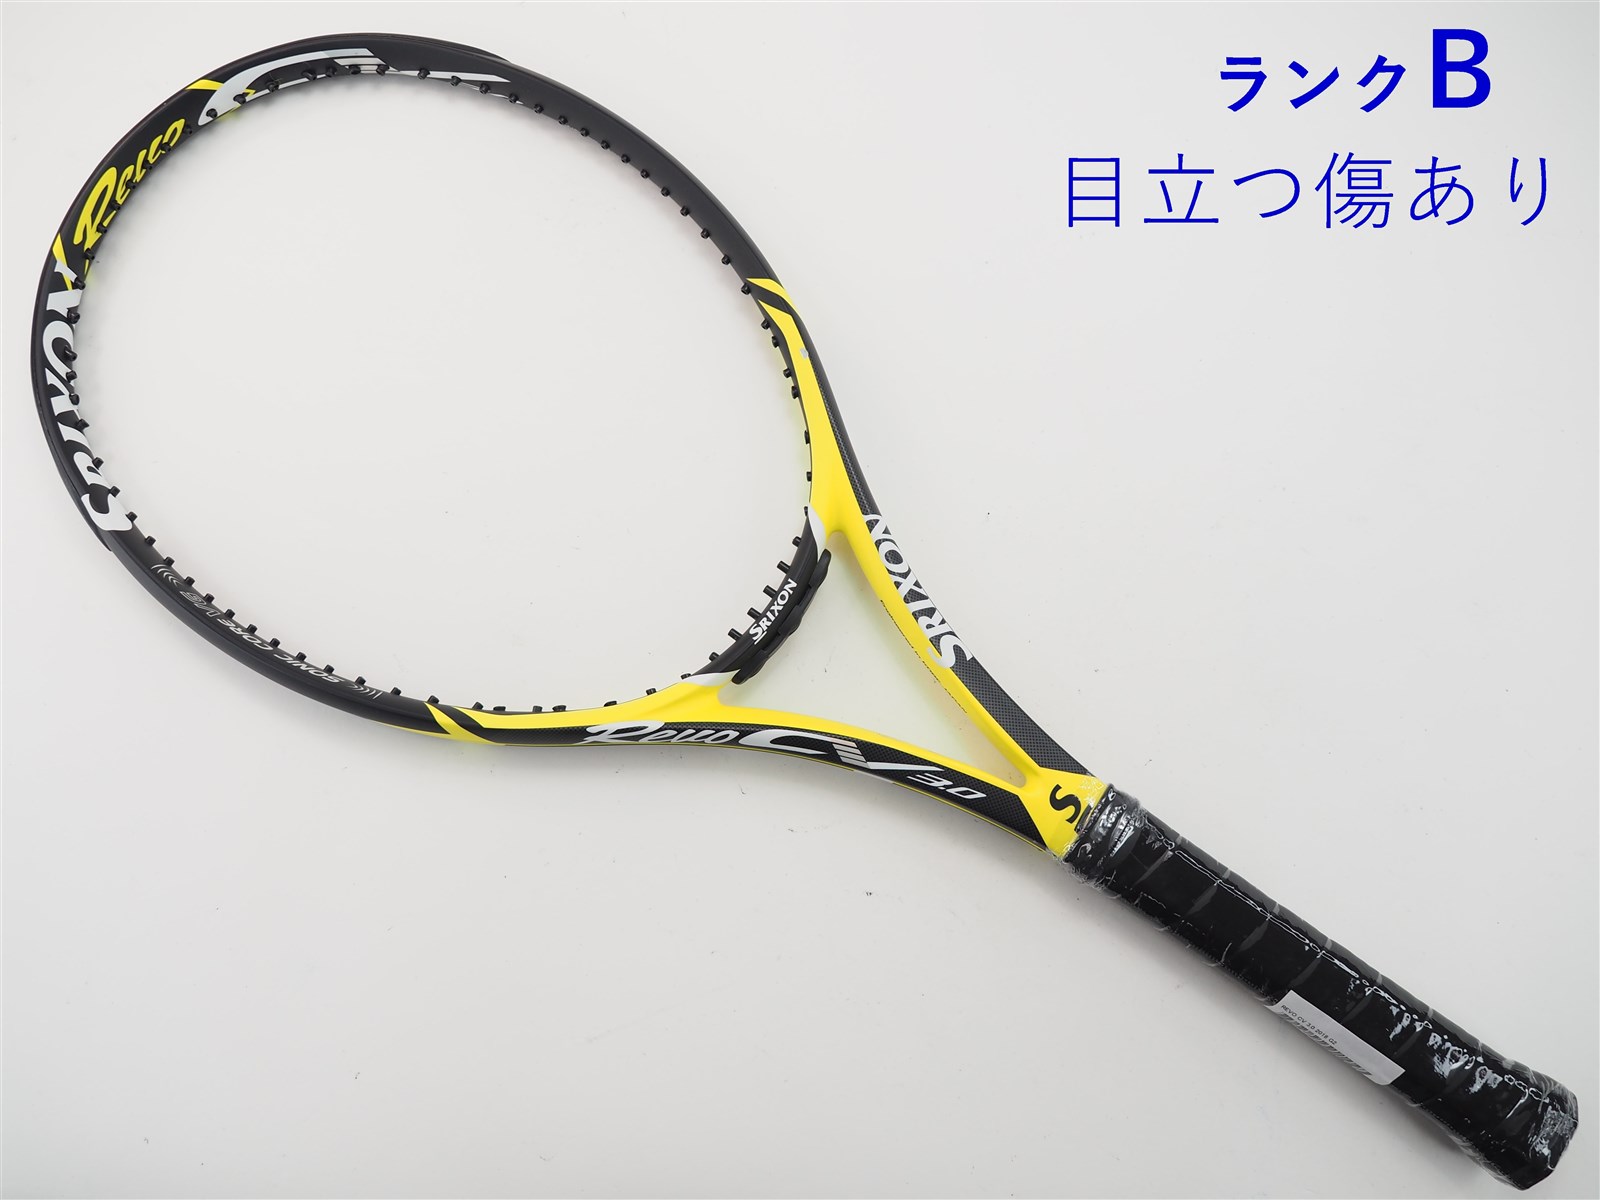 テニスラケット スリクソン レヴォ CV 3.0 2018年モデル (G2)SRIXON